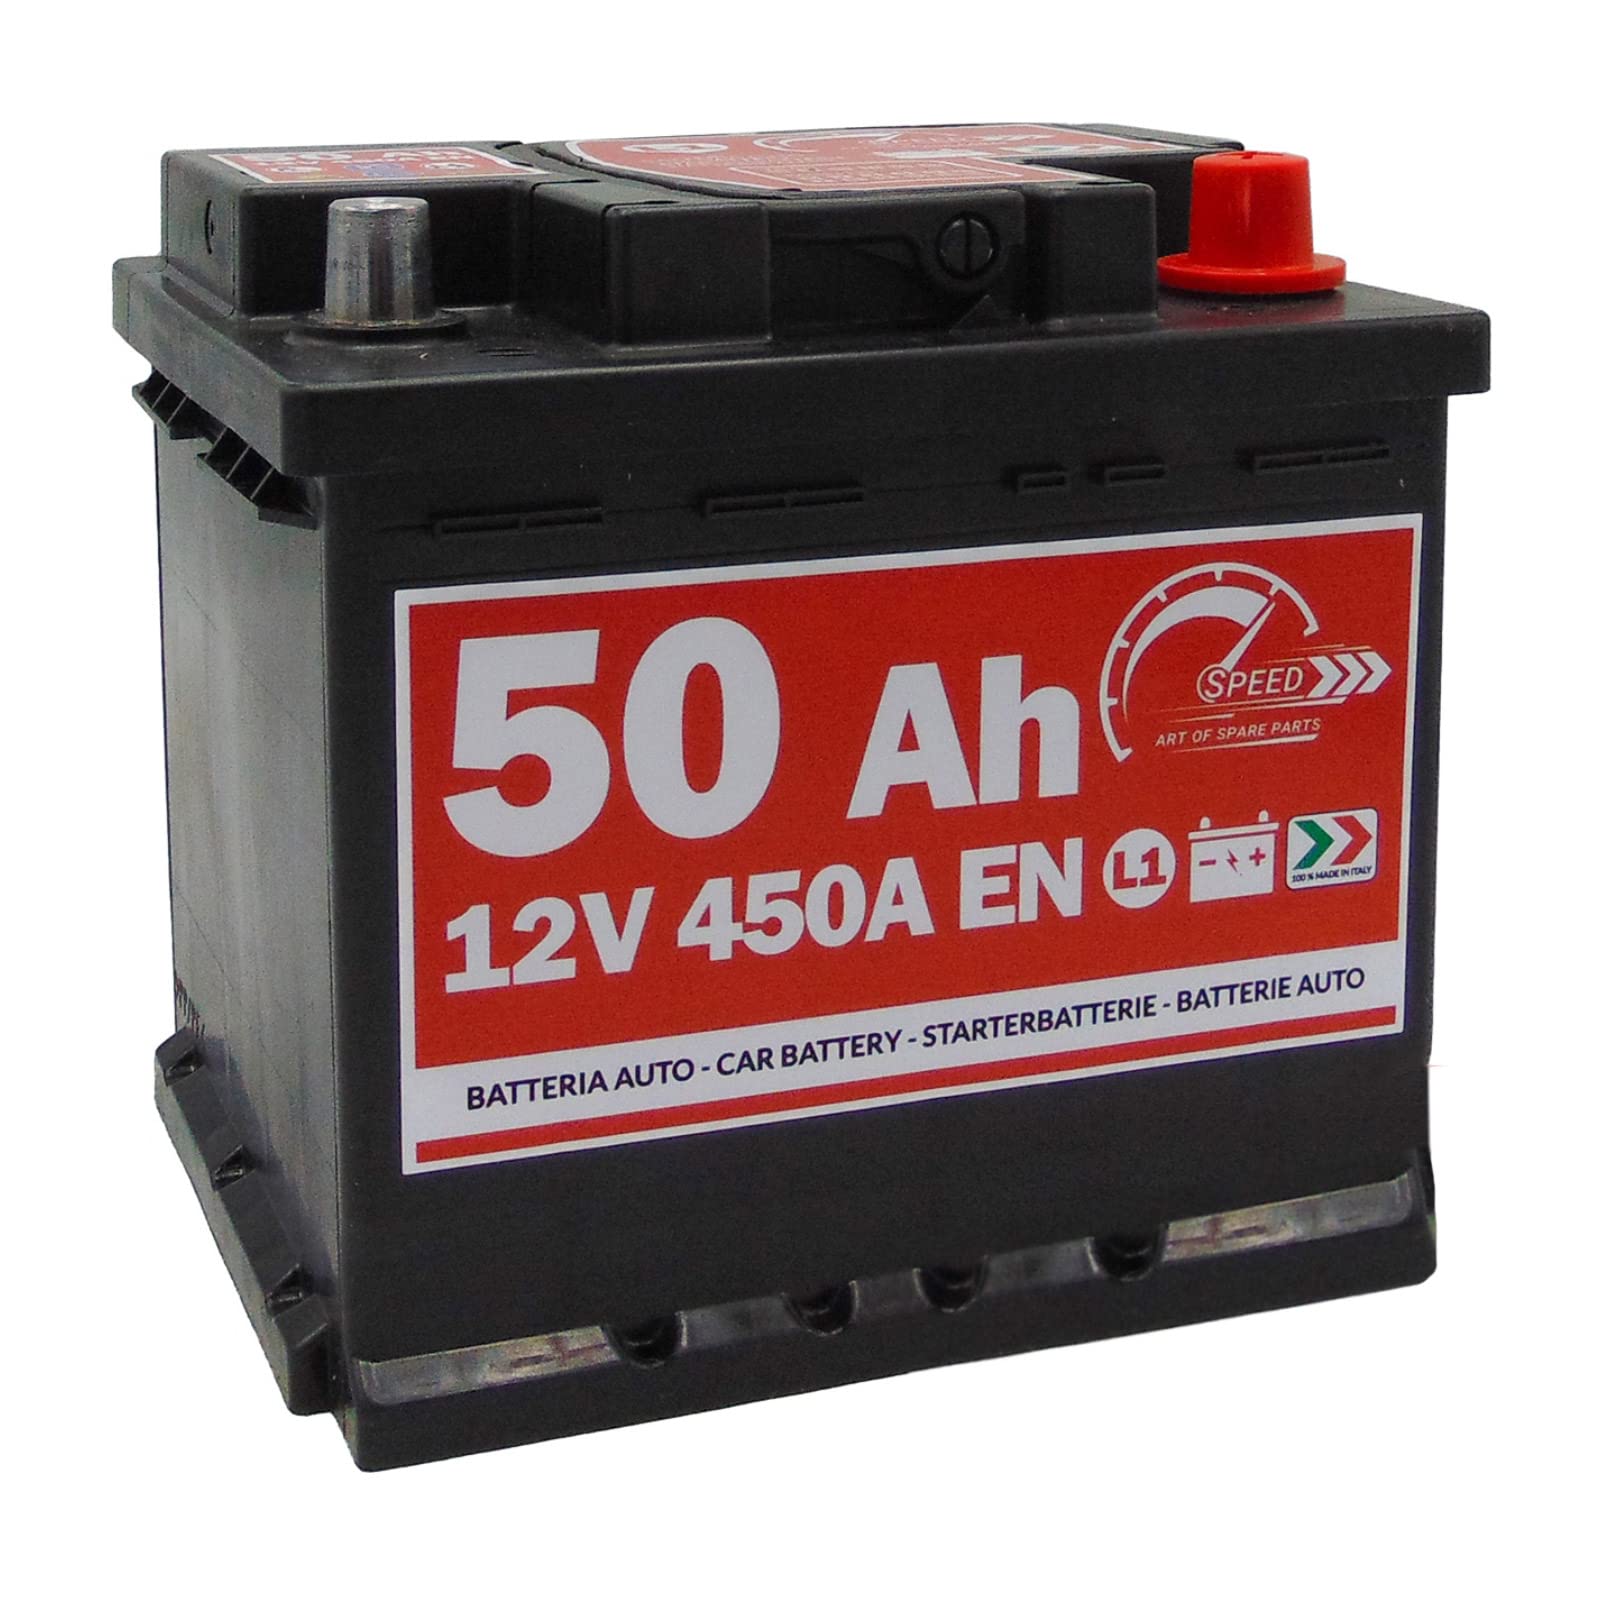 Autobatterie Speed L150-12V 50Ah 450A/EN - Starter 30% mehr Leistung von SMC